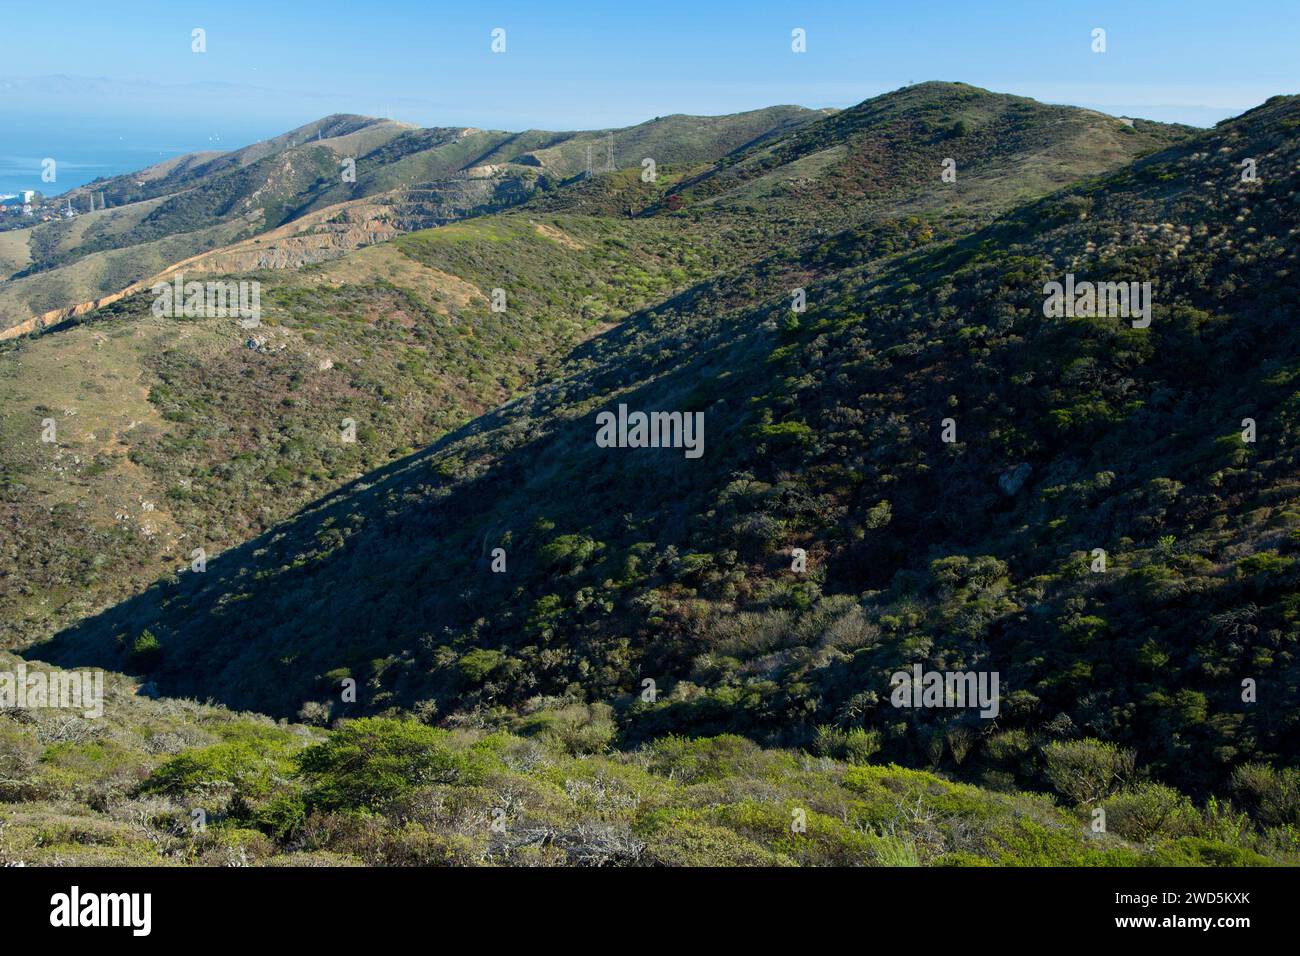 Summit view, San Bruno Mountain State Park, California Stock Photo